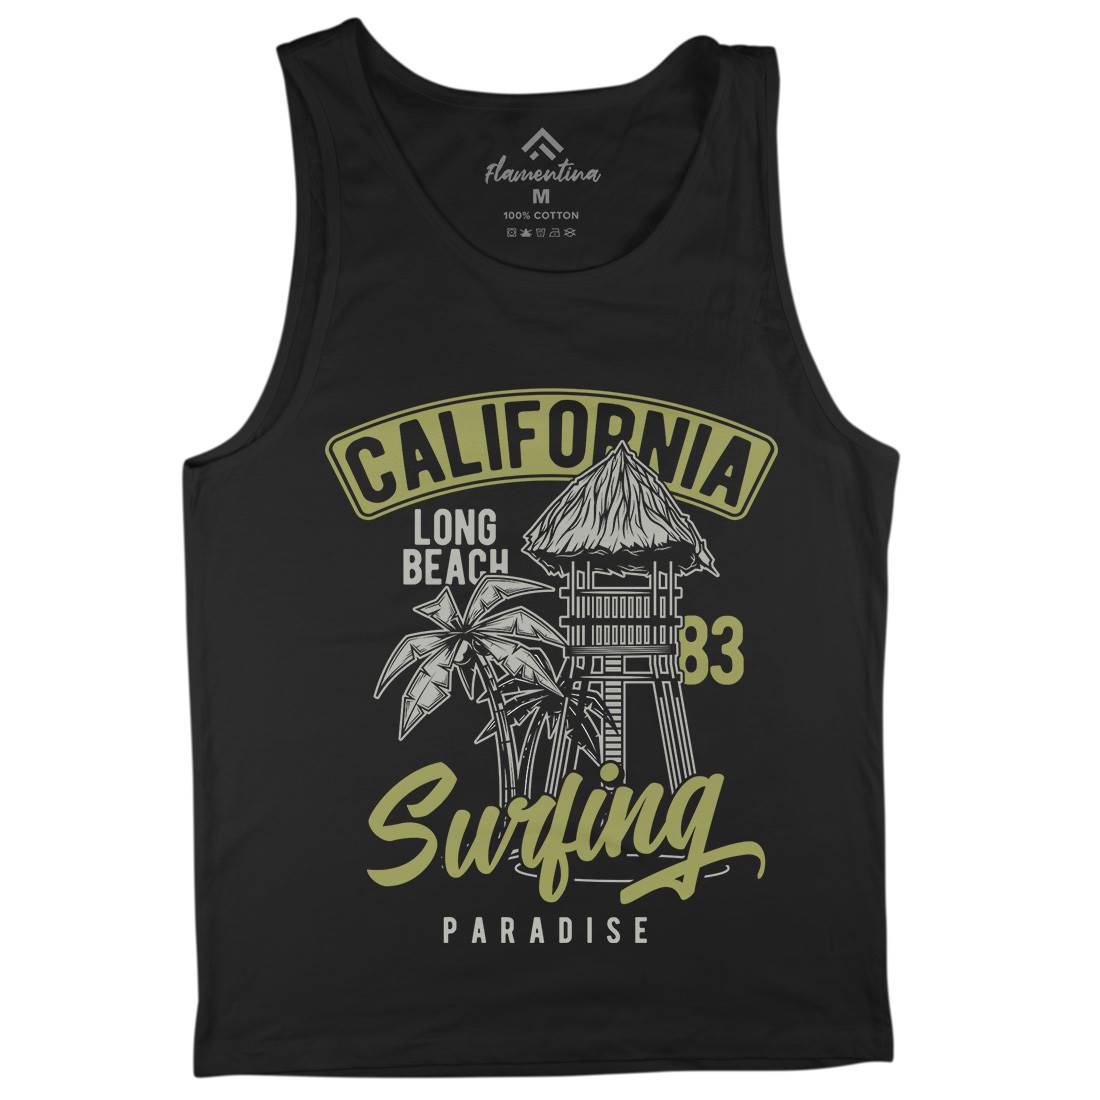 California Surfing Mens Tank Top Vest Surf B882